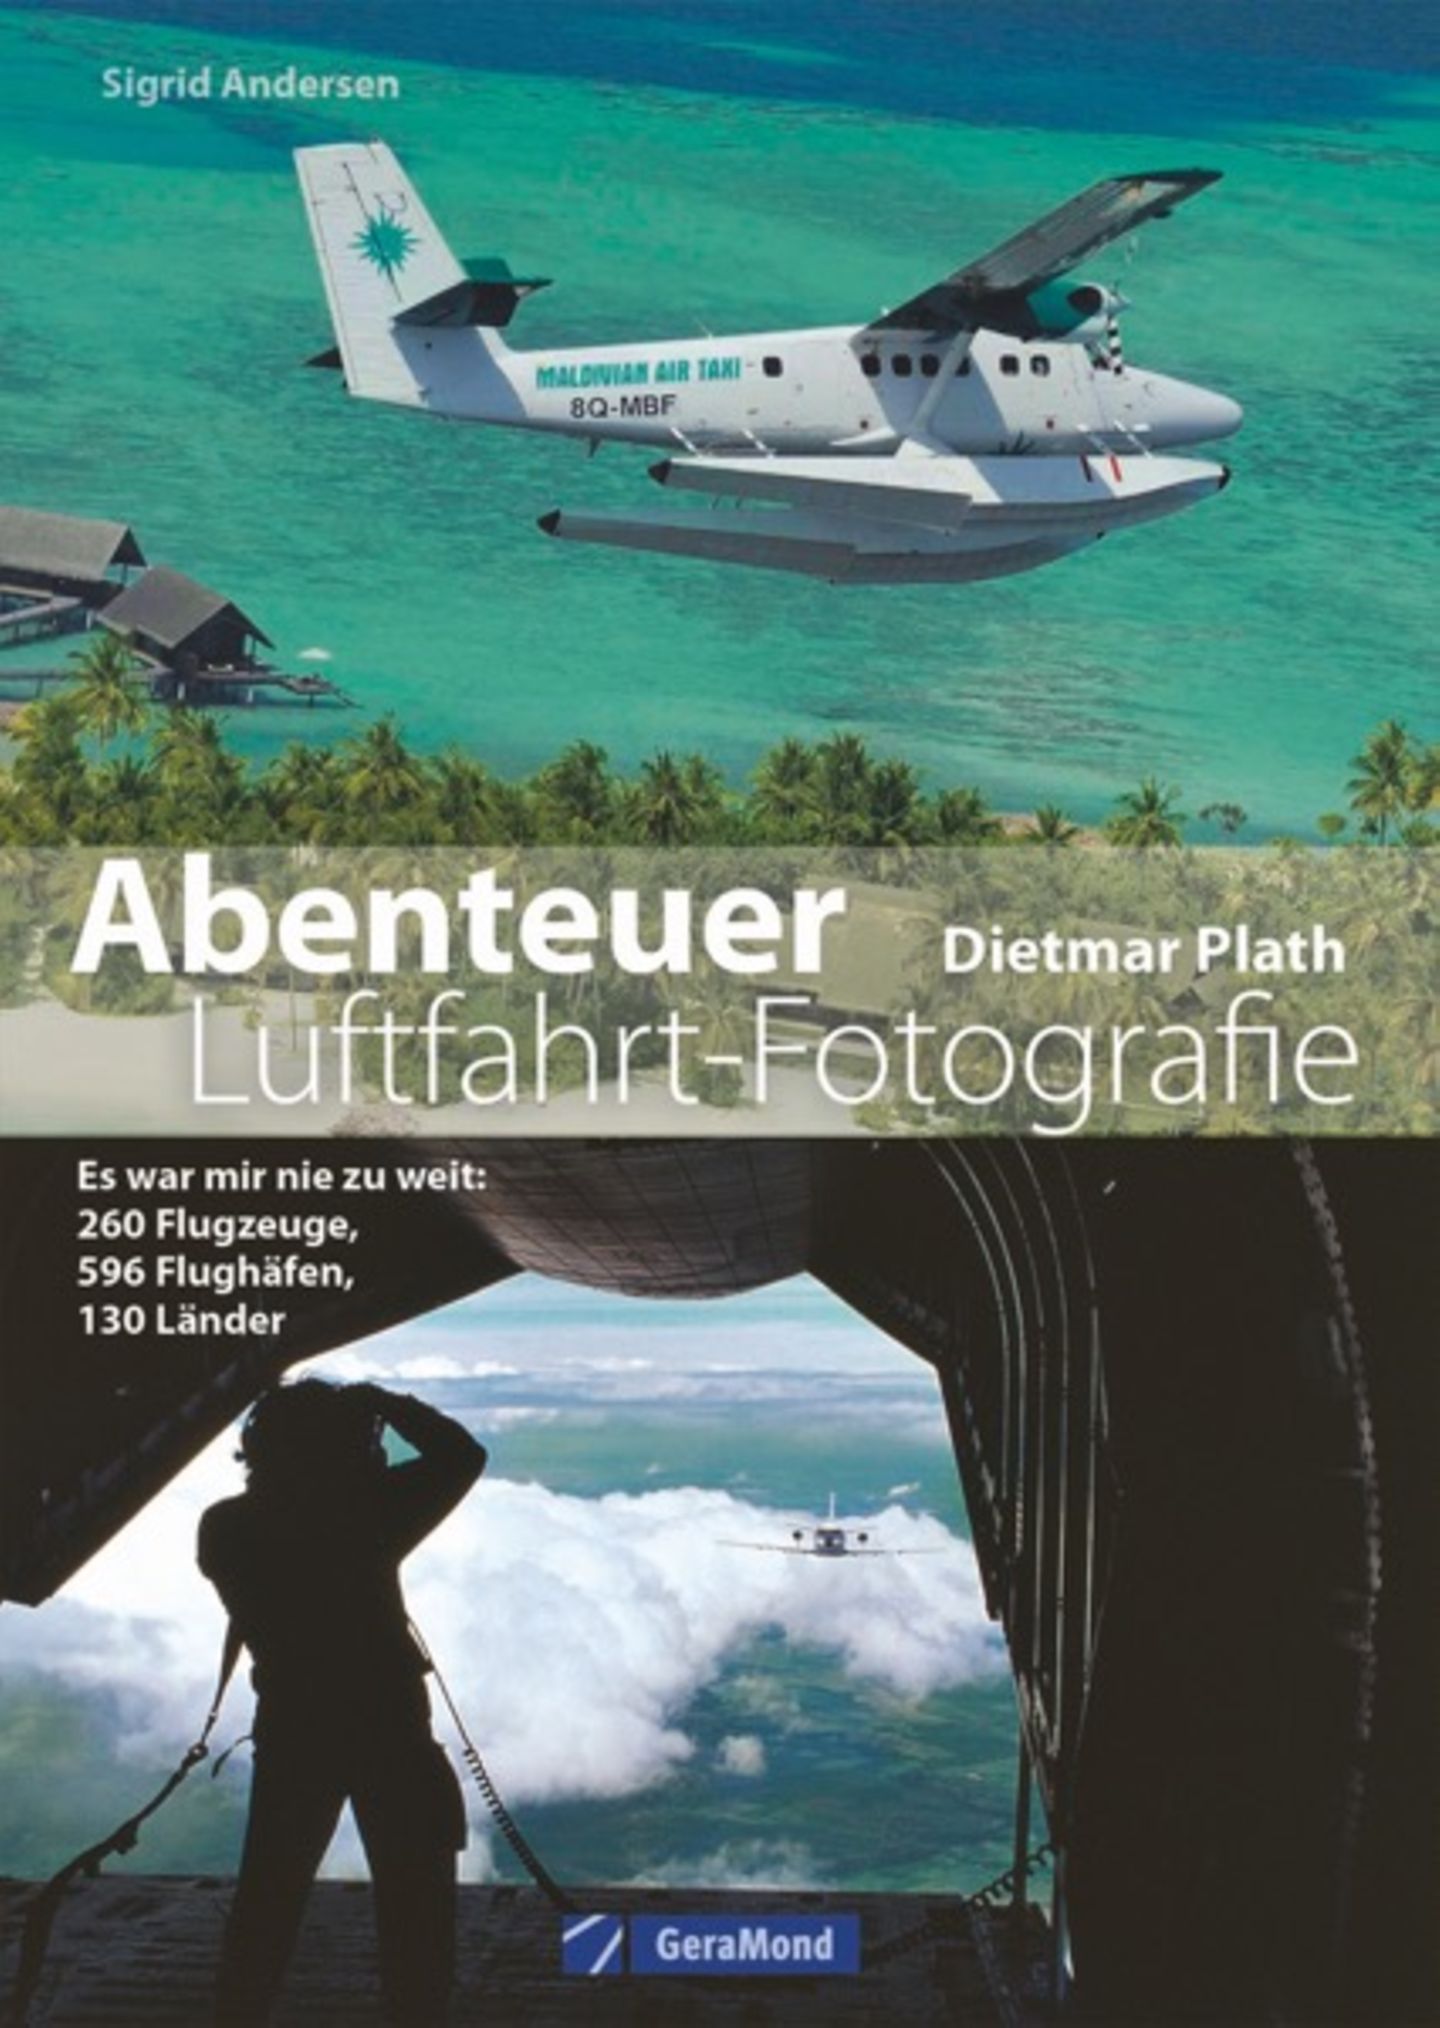 "Abenteuer Luftfahrt-Fotografie" von Dietmar Plath und Sigrid Andersen. Erschienen bei GeraMond, 192 Seiten, Preis: 24,99 Euro.